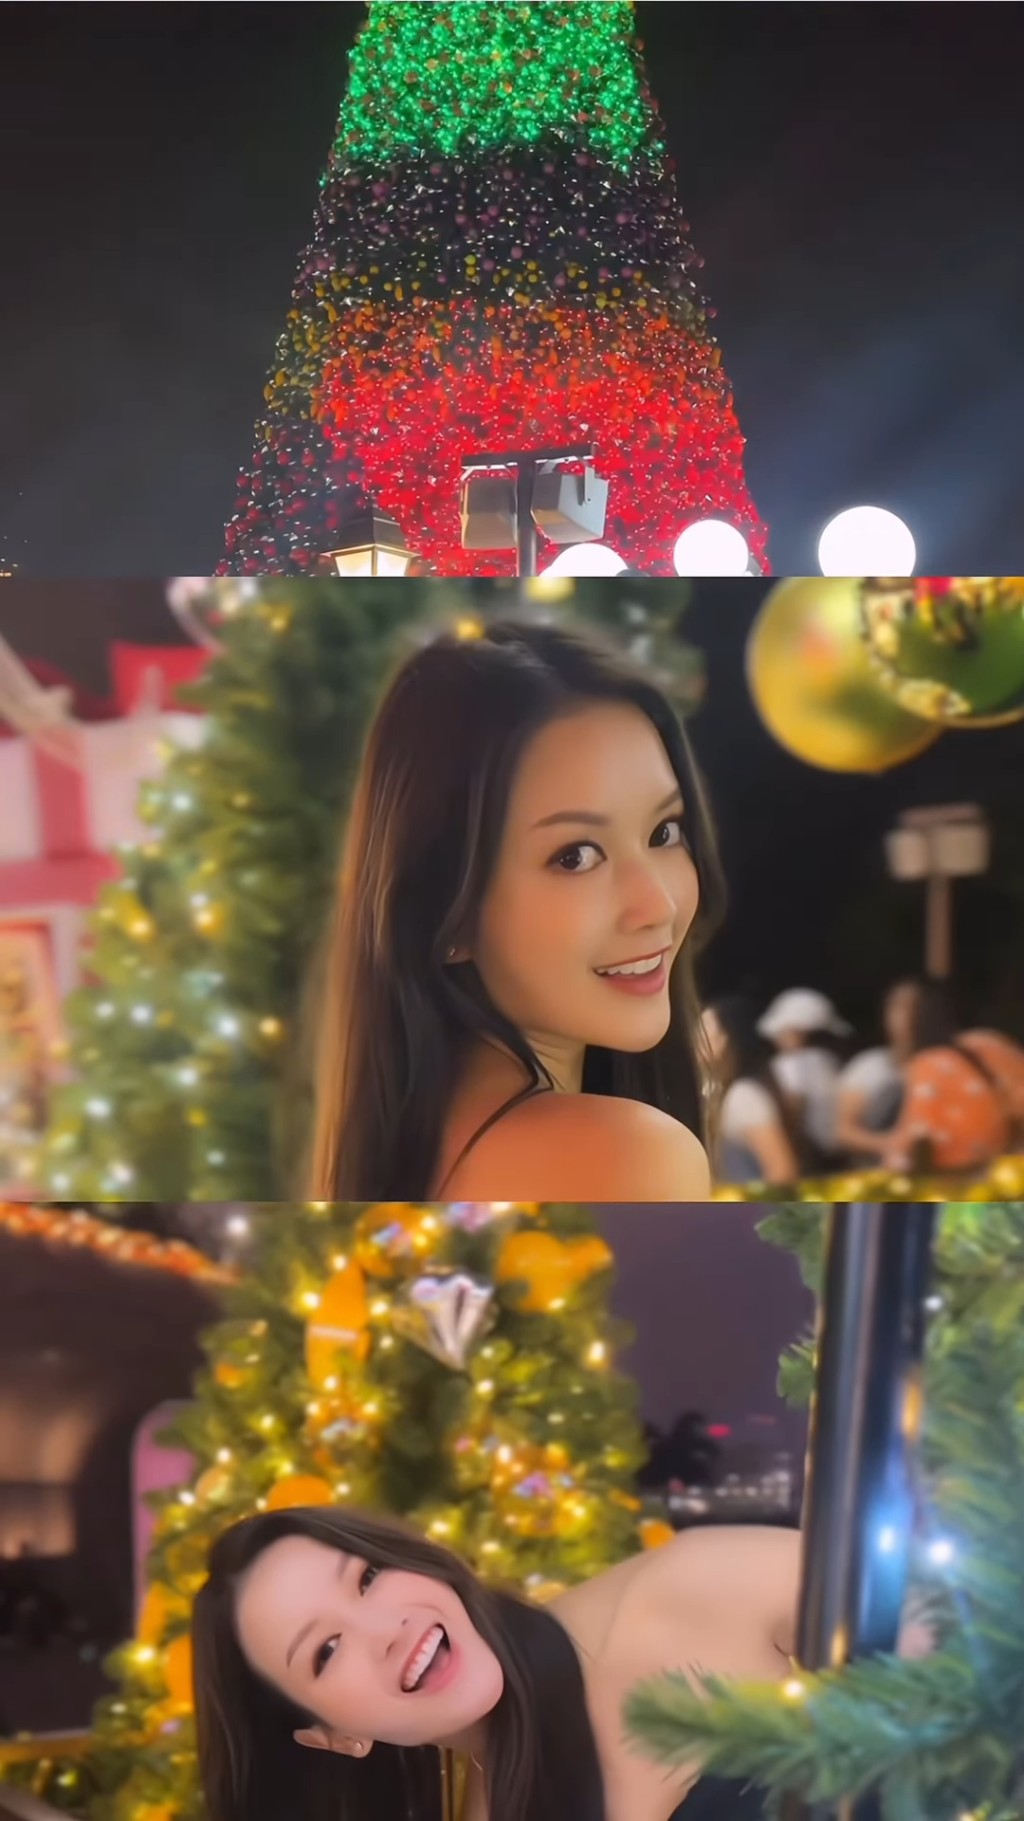 另一TVB小花鍾晴都有分享聖誕相。